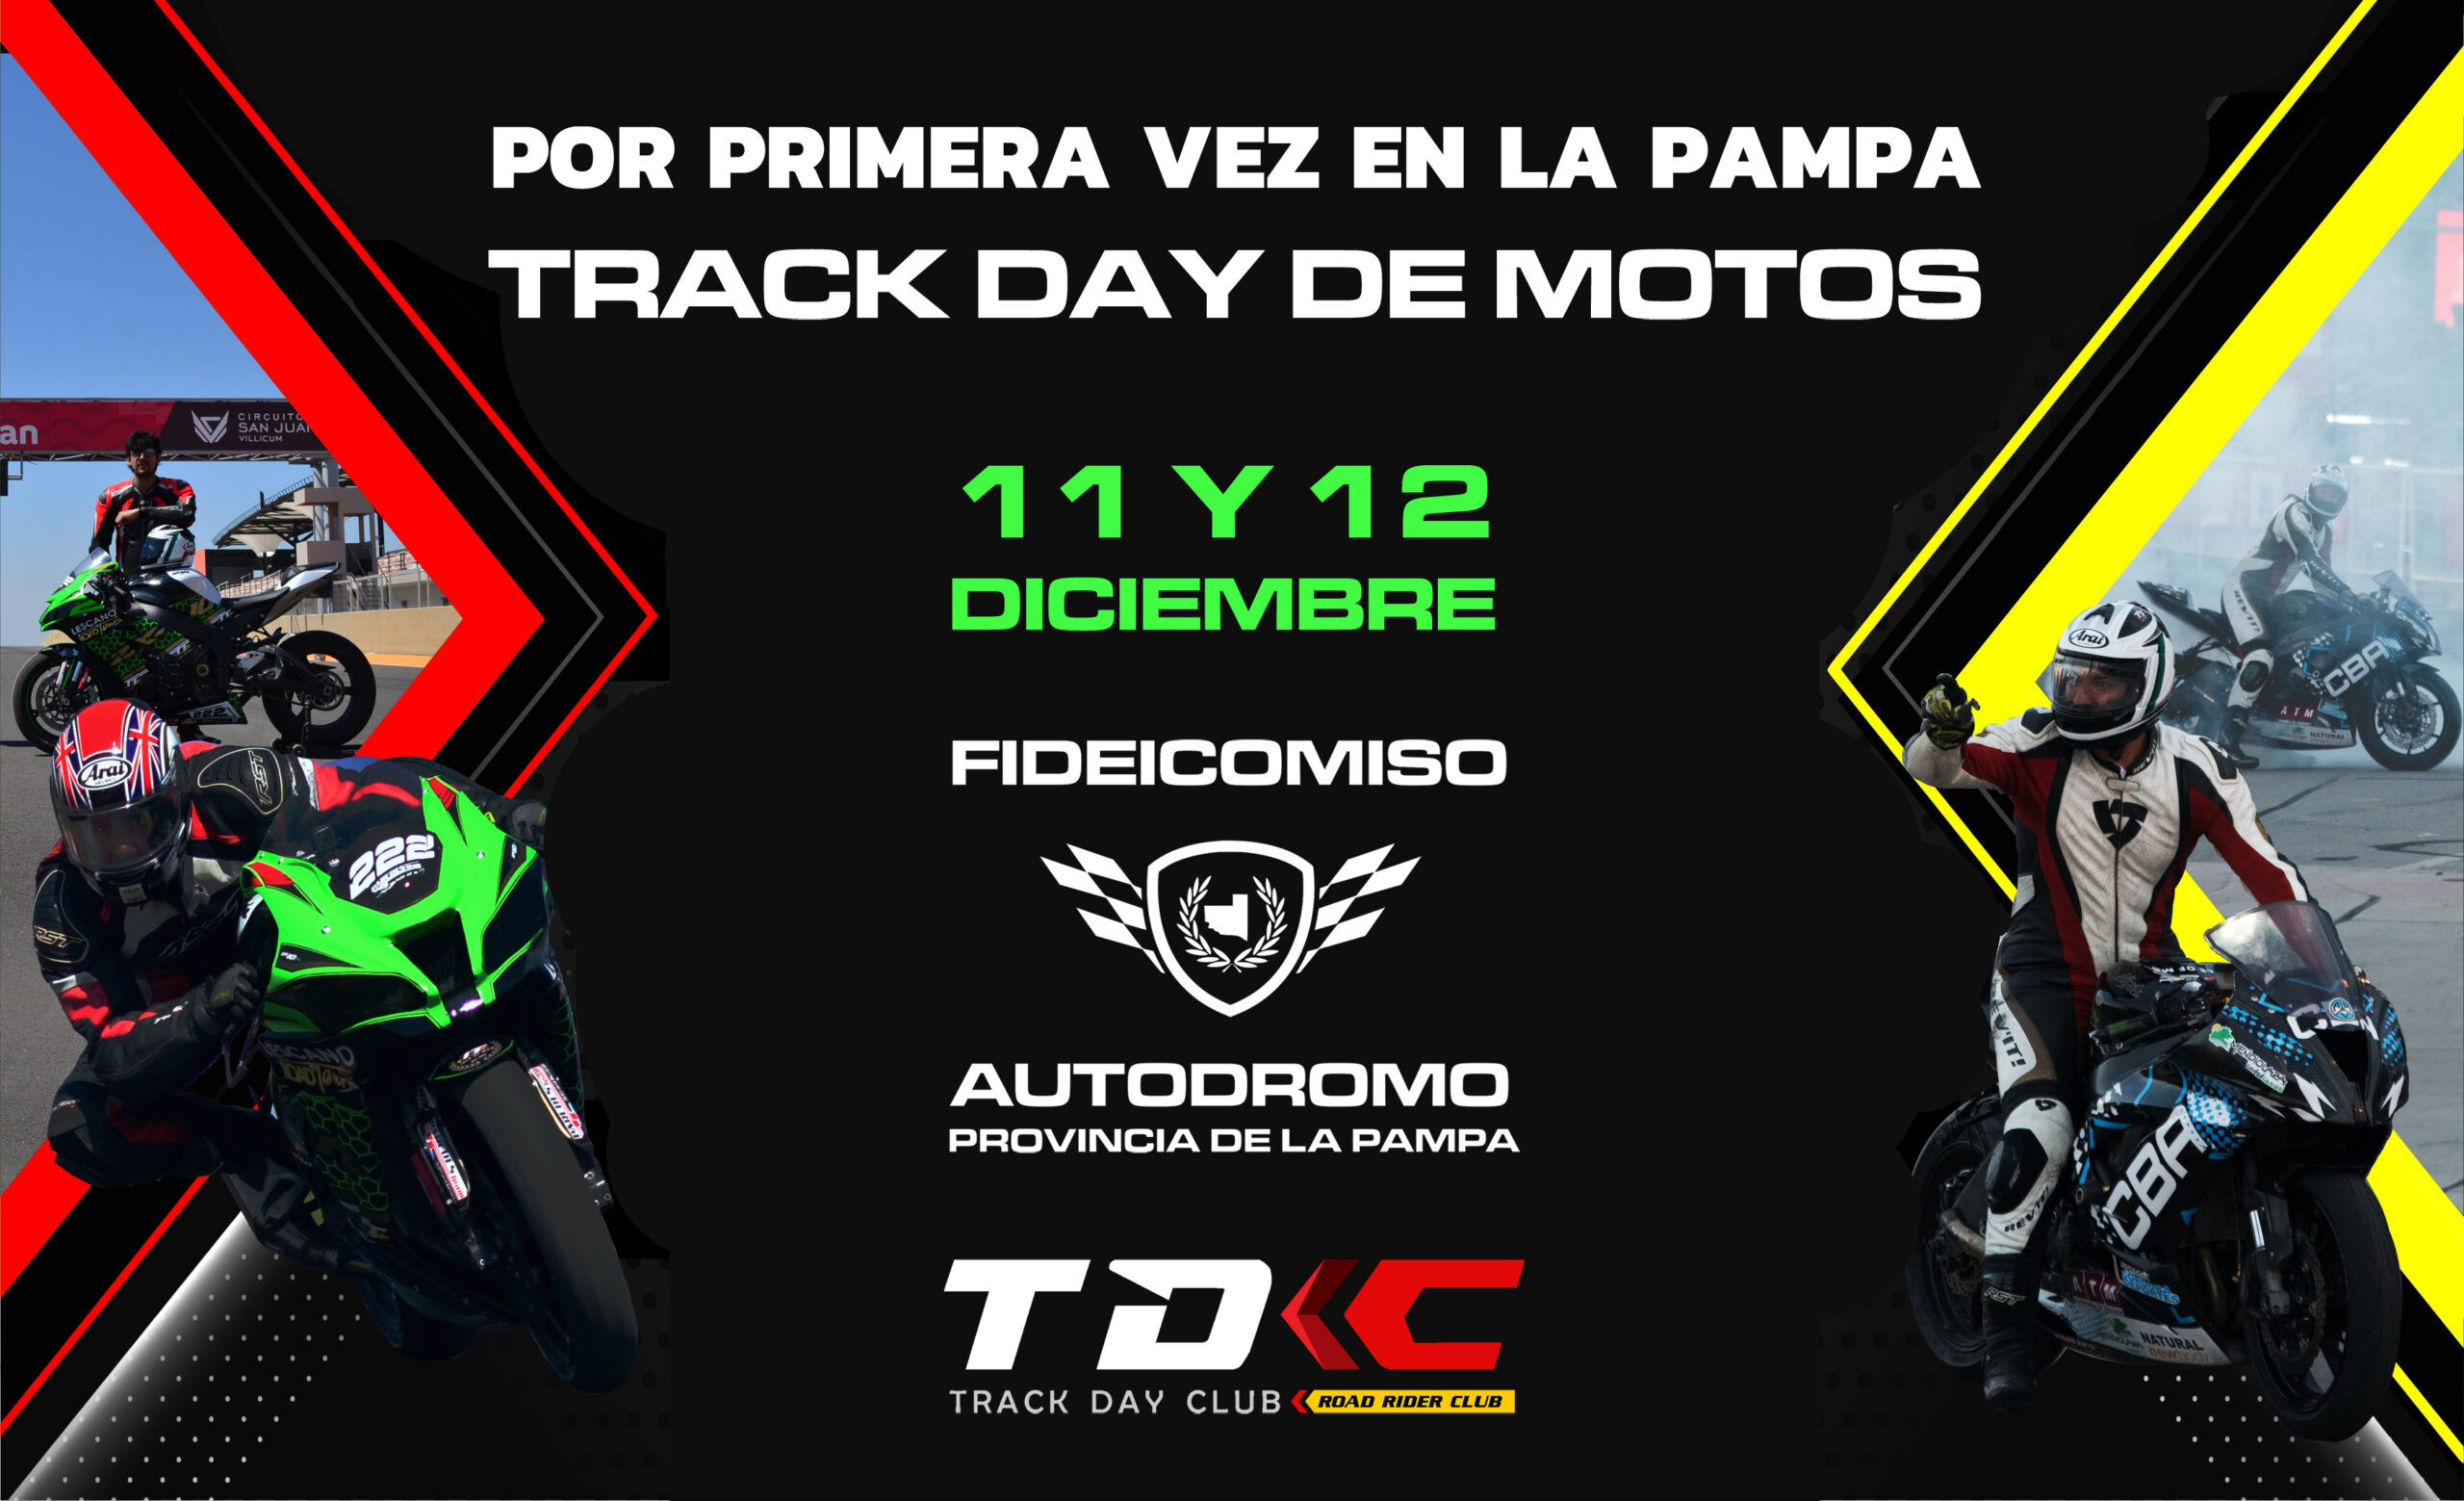 PRIMER TRACK DAY DE MOTOS EN LA PAMPA